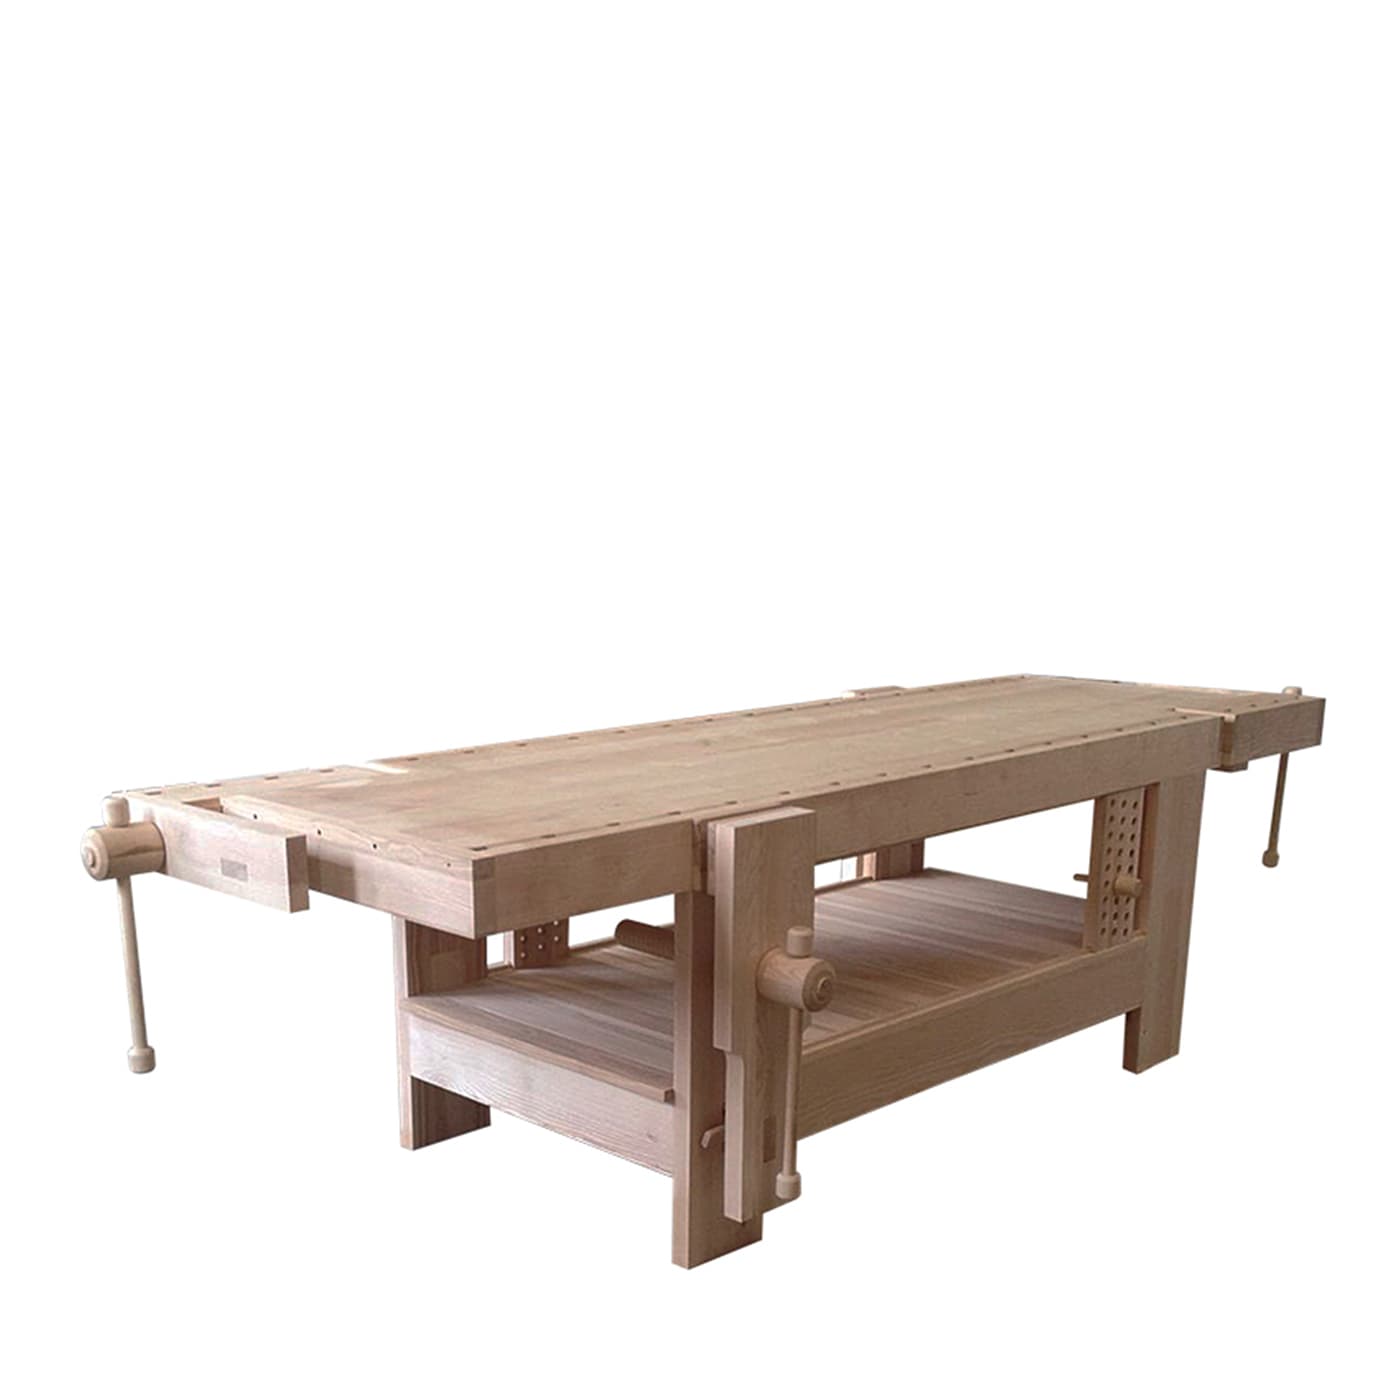 Oroval Carpenter Table - Oltrelegno